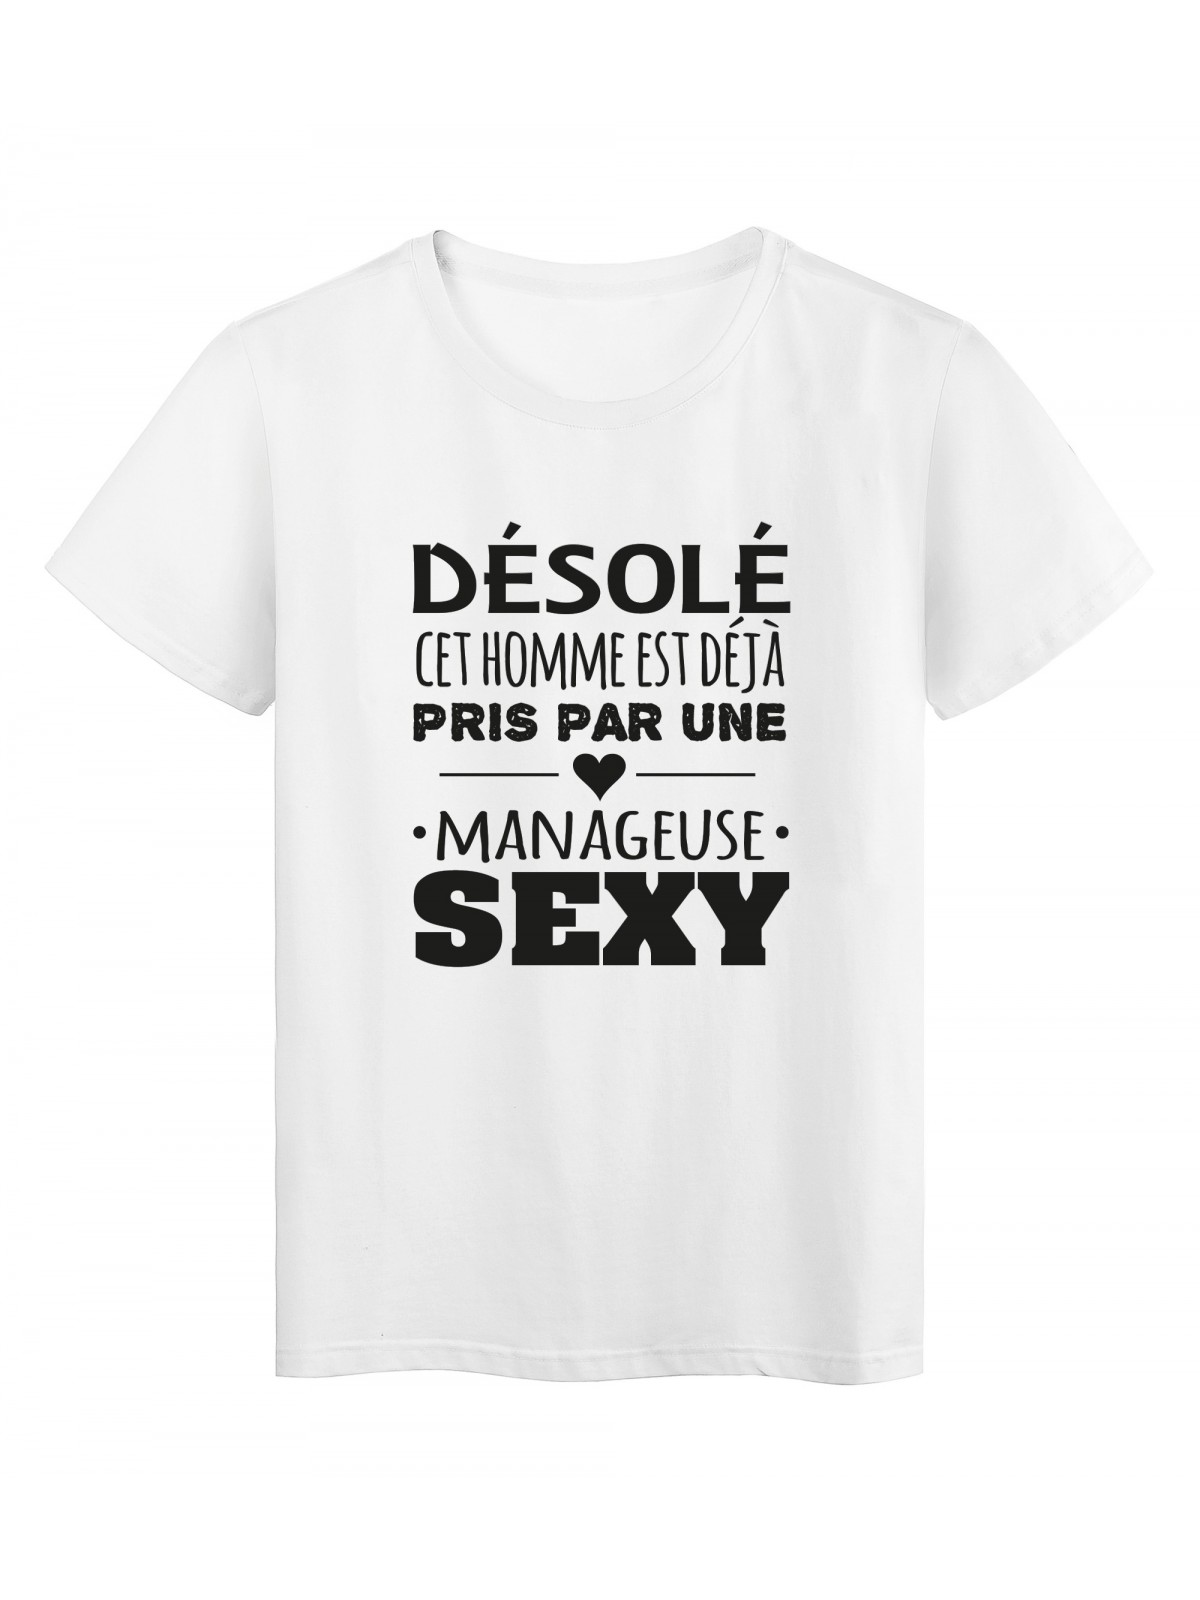 T-Shirt imprimÃ© citation humour dÃ©solÃ© cet homme est deja pris par une manageuse sexy